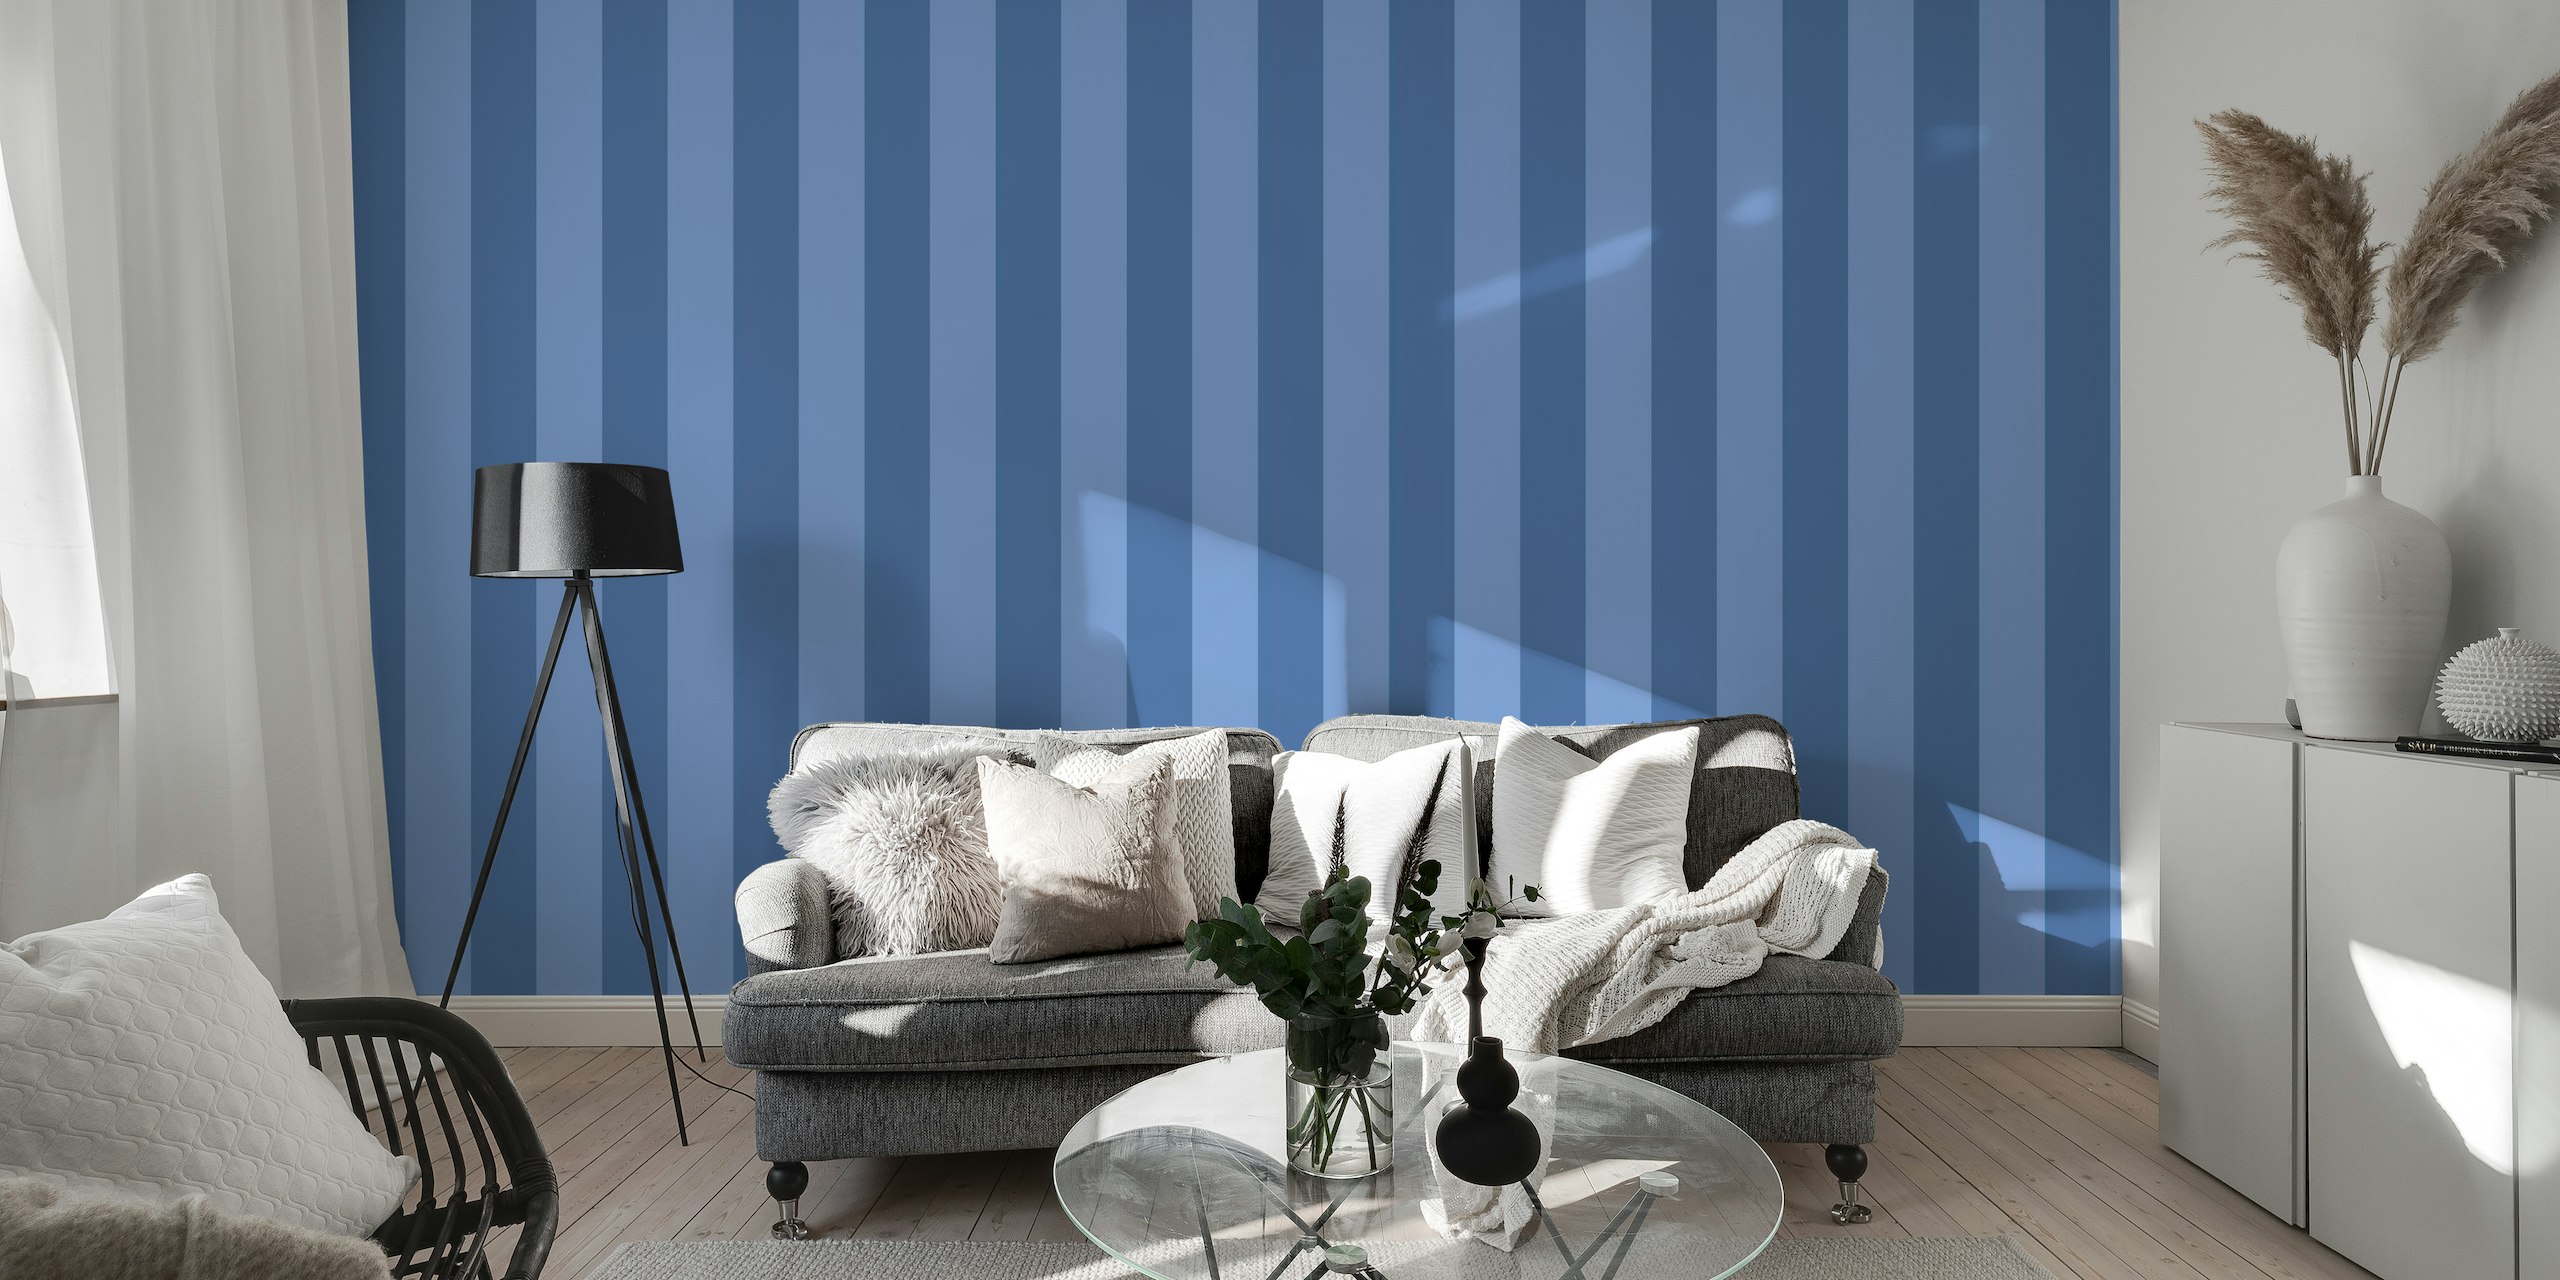 Monochrome Blue Stripe behang